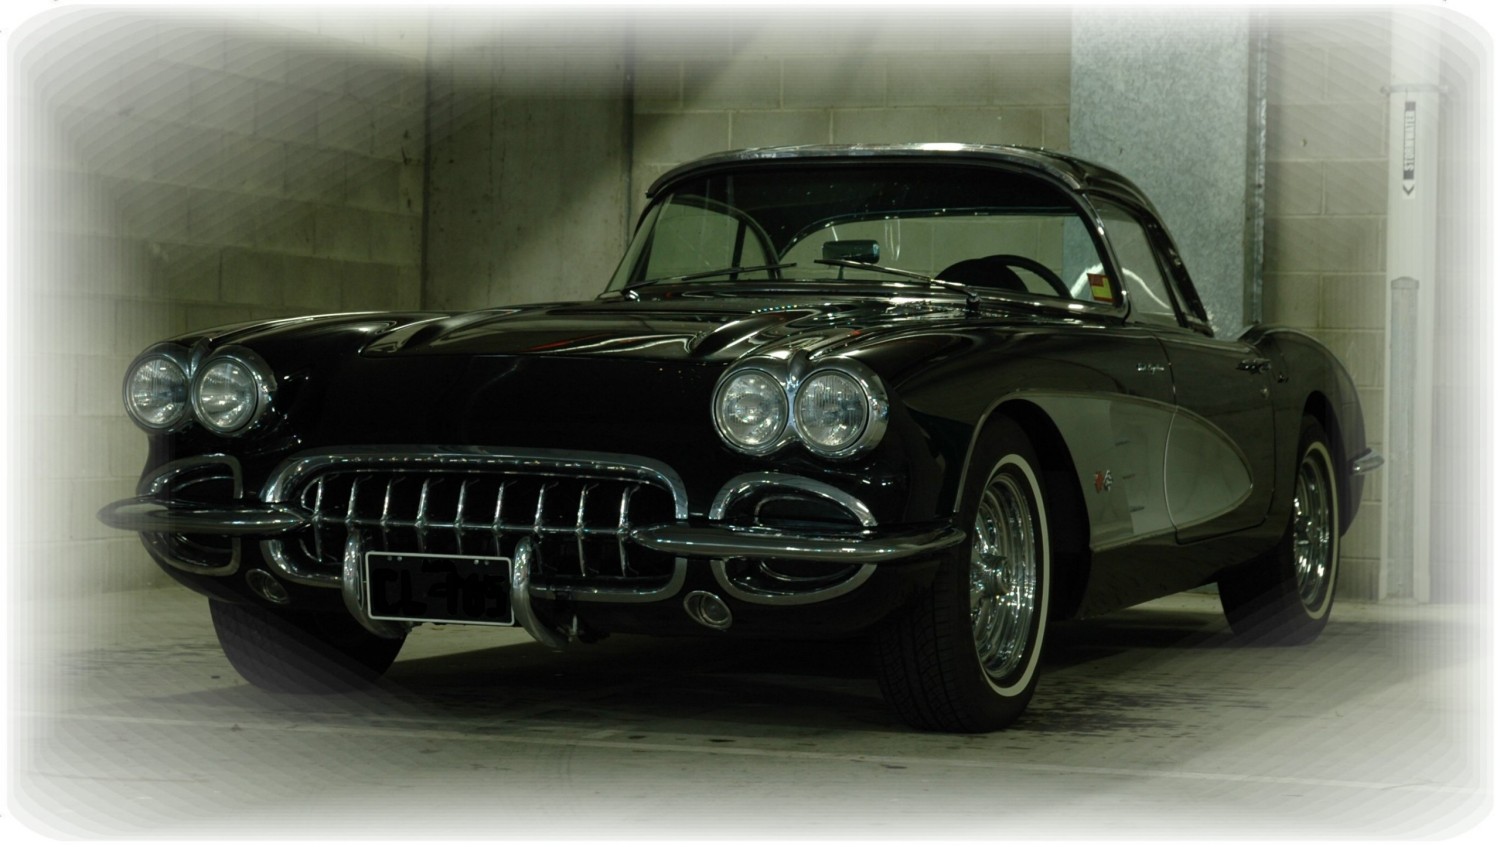 1958 Chevrolet corvette C1